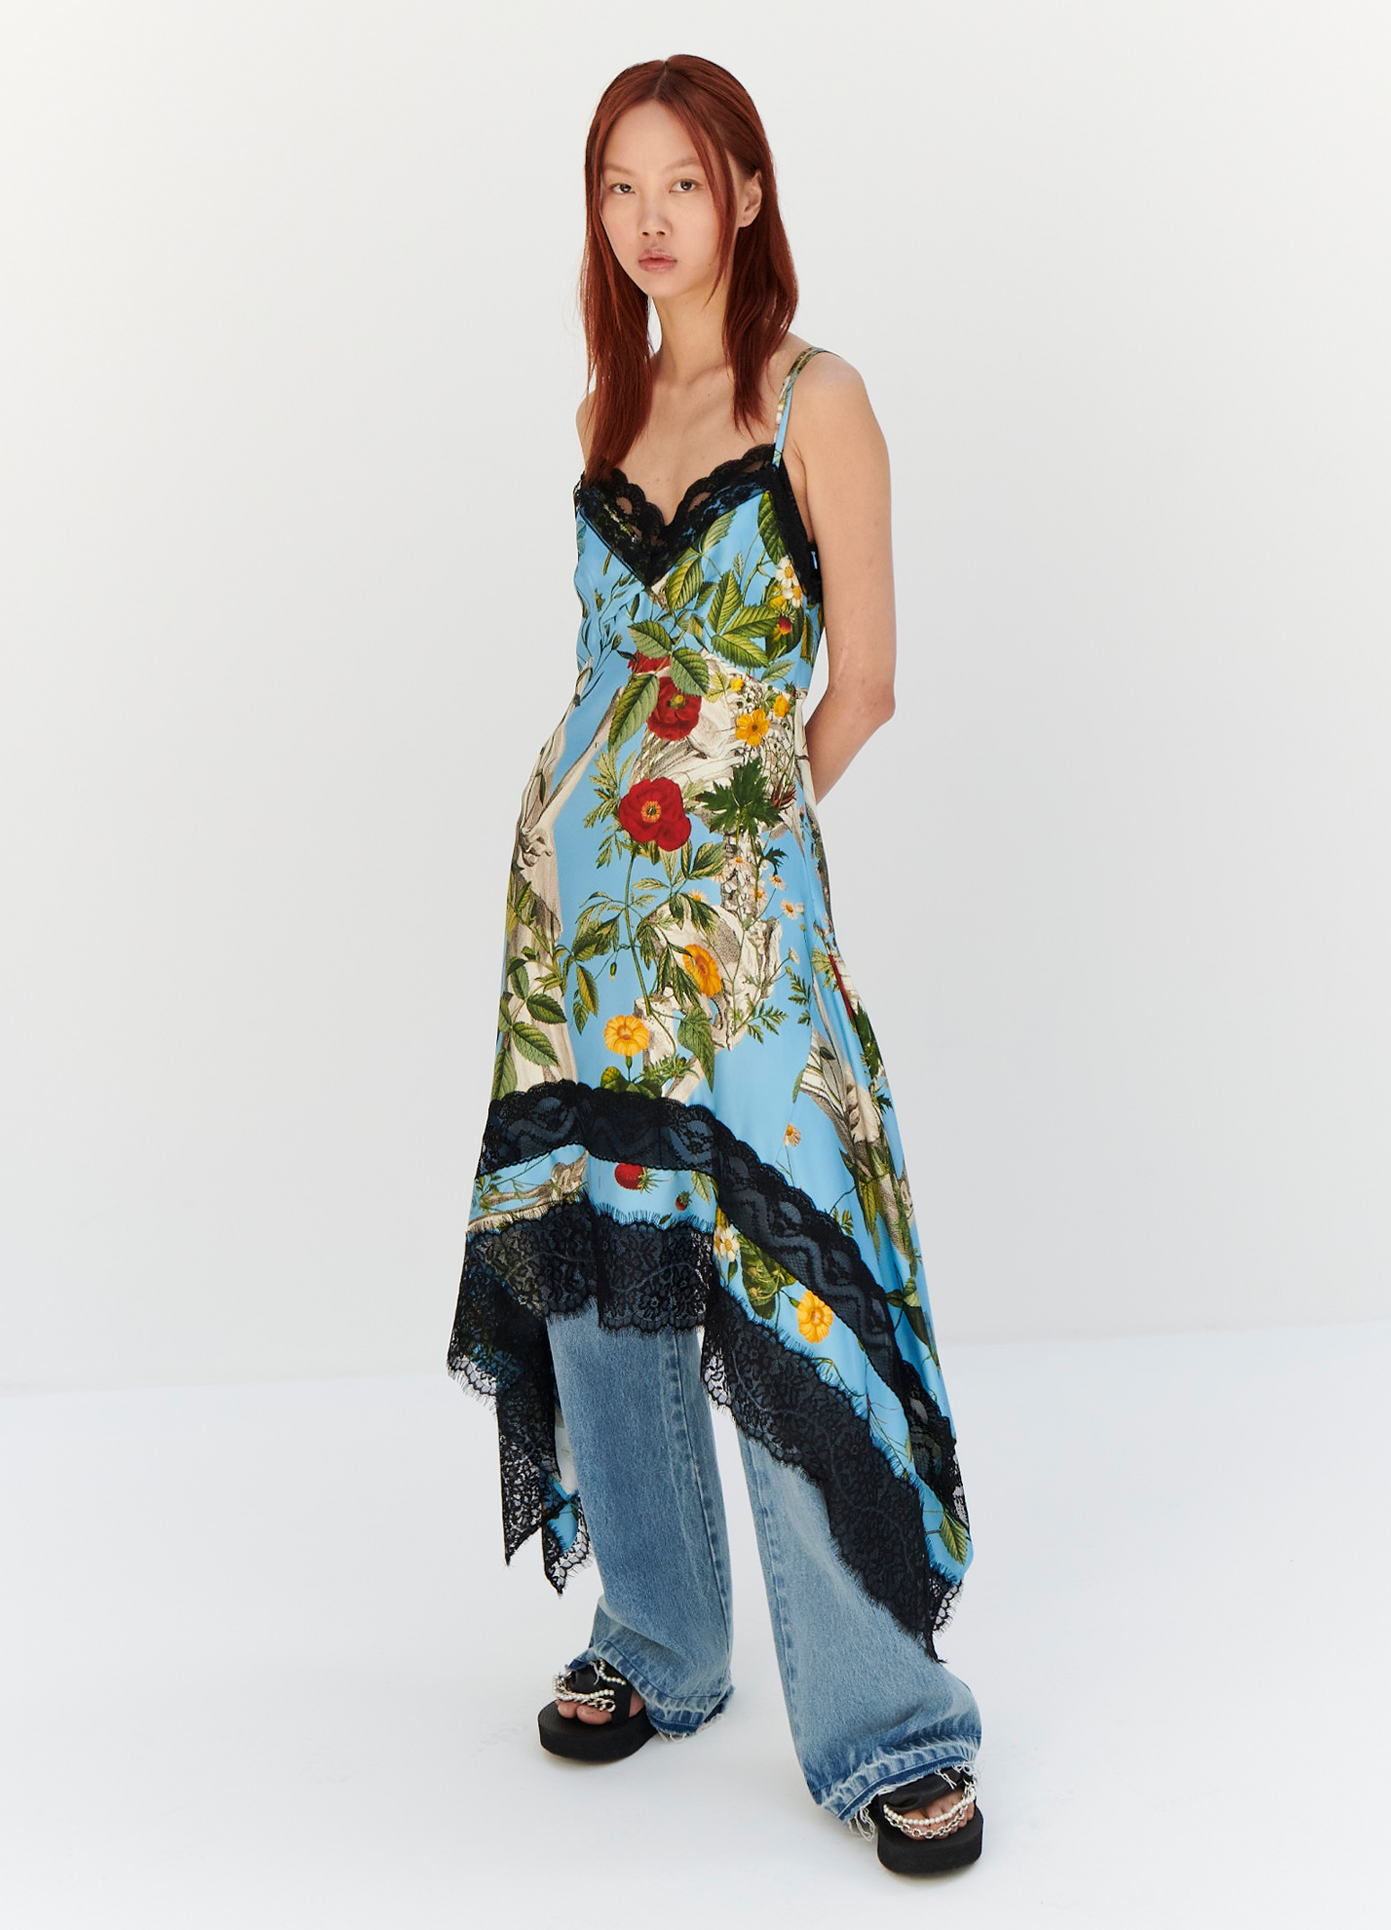 MONSE Floral Skeleton Print Slip Dress in Blue Multi on model full front view